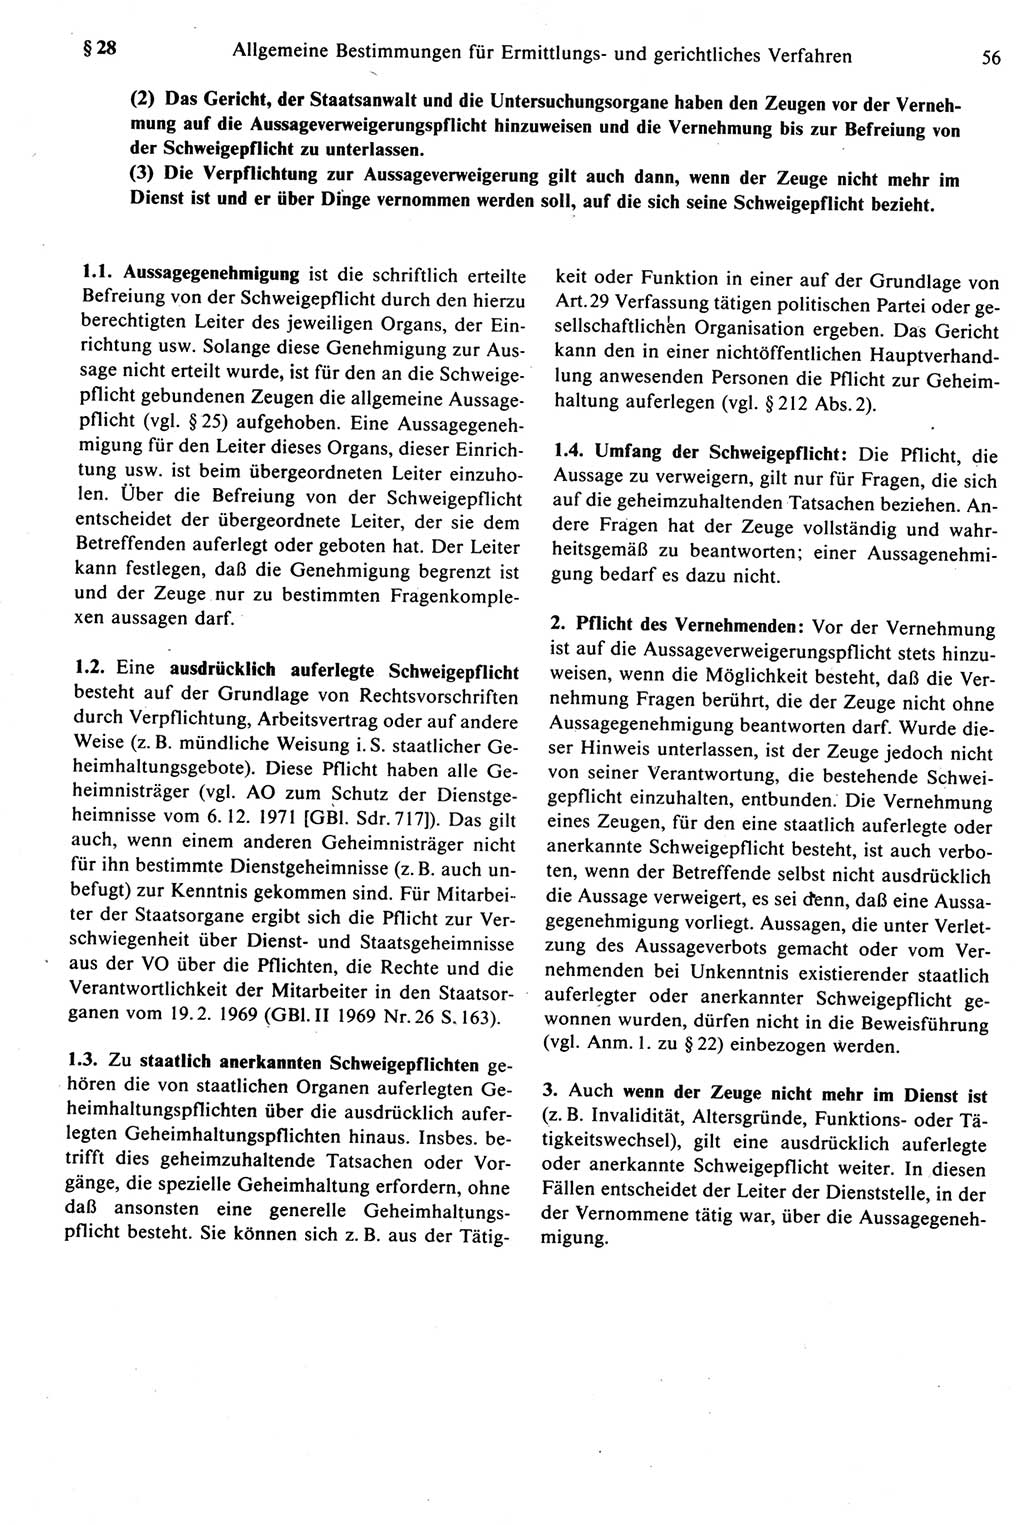 Strafprozeßrecht der DDR [Deutsche Demokratische Republik], Kommentar zur Strafprozeßordnung (StPO) 1987, Seite 56 (Strafprozeßr. DDR Komm. StPO 1987, S. 56)